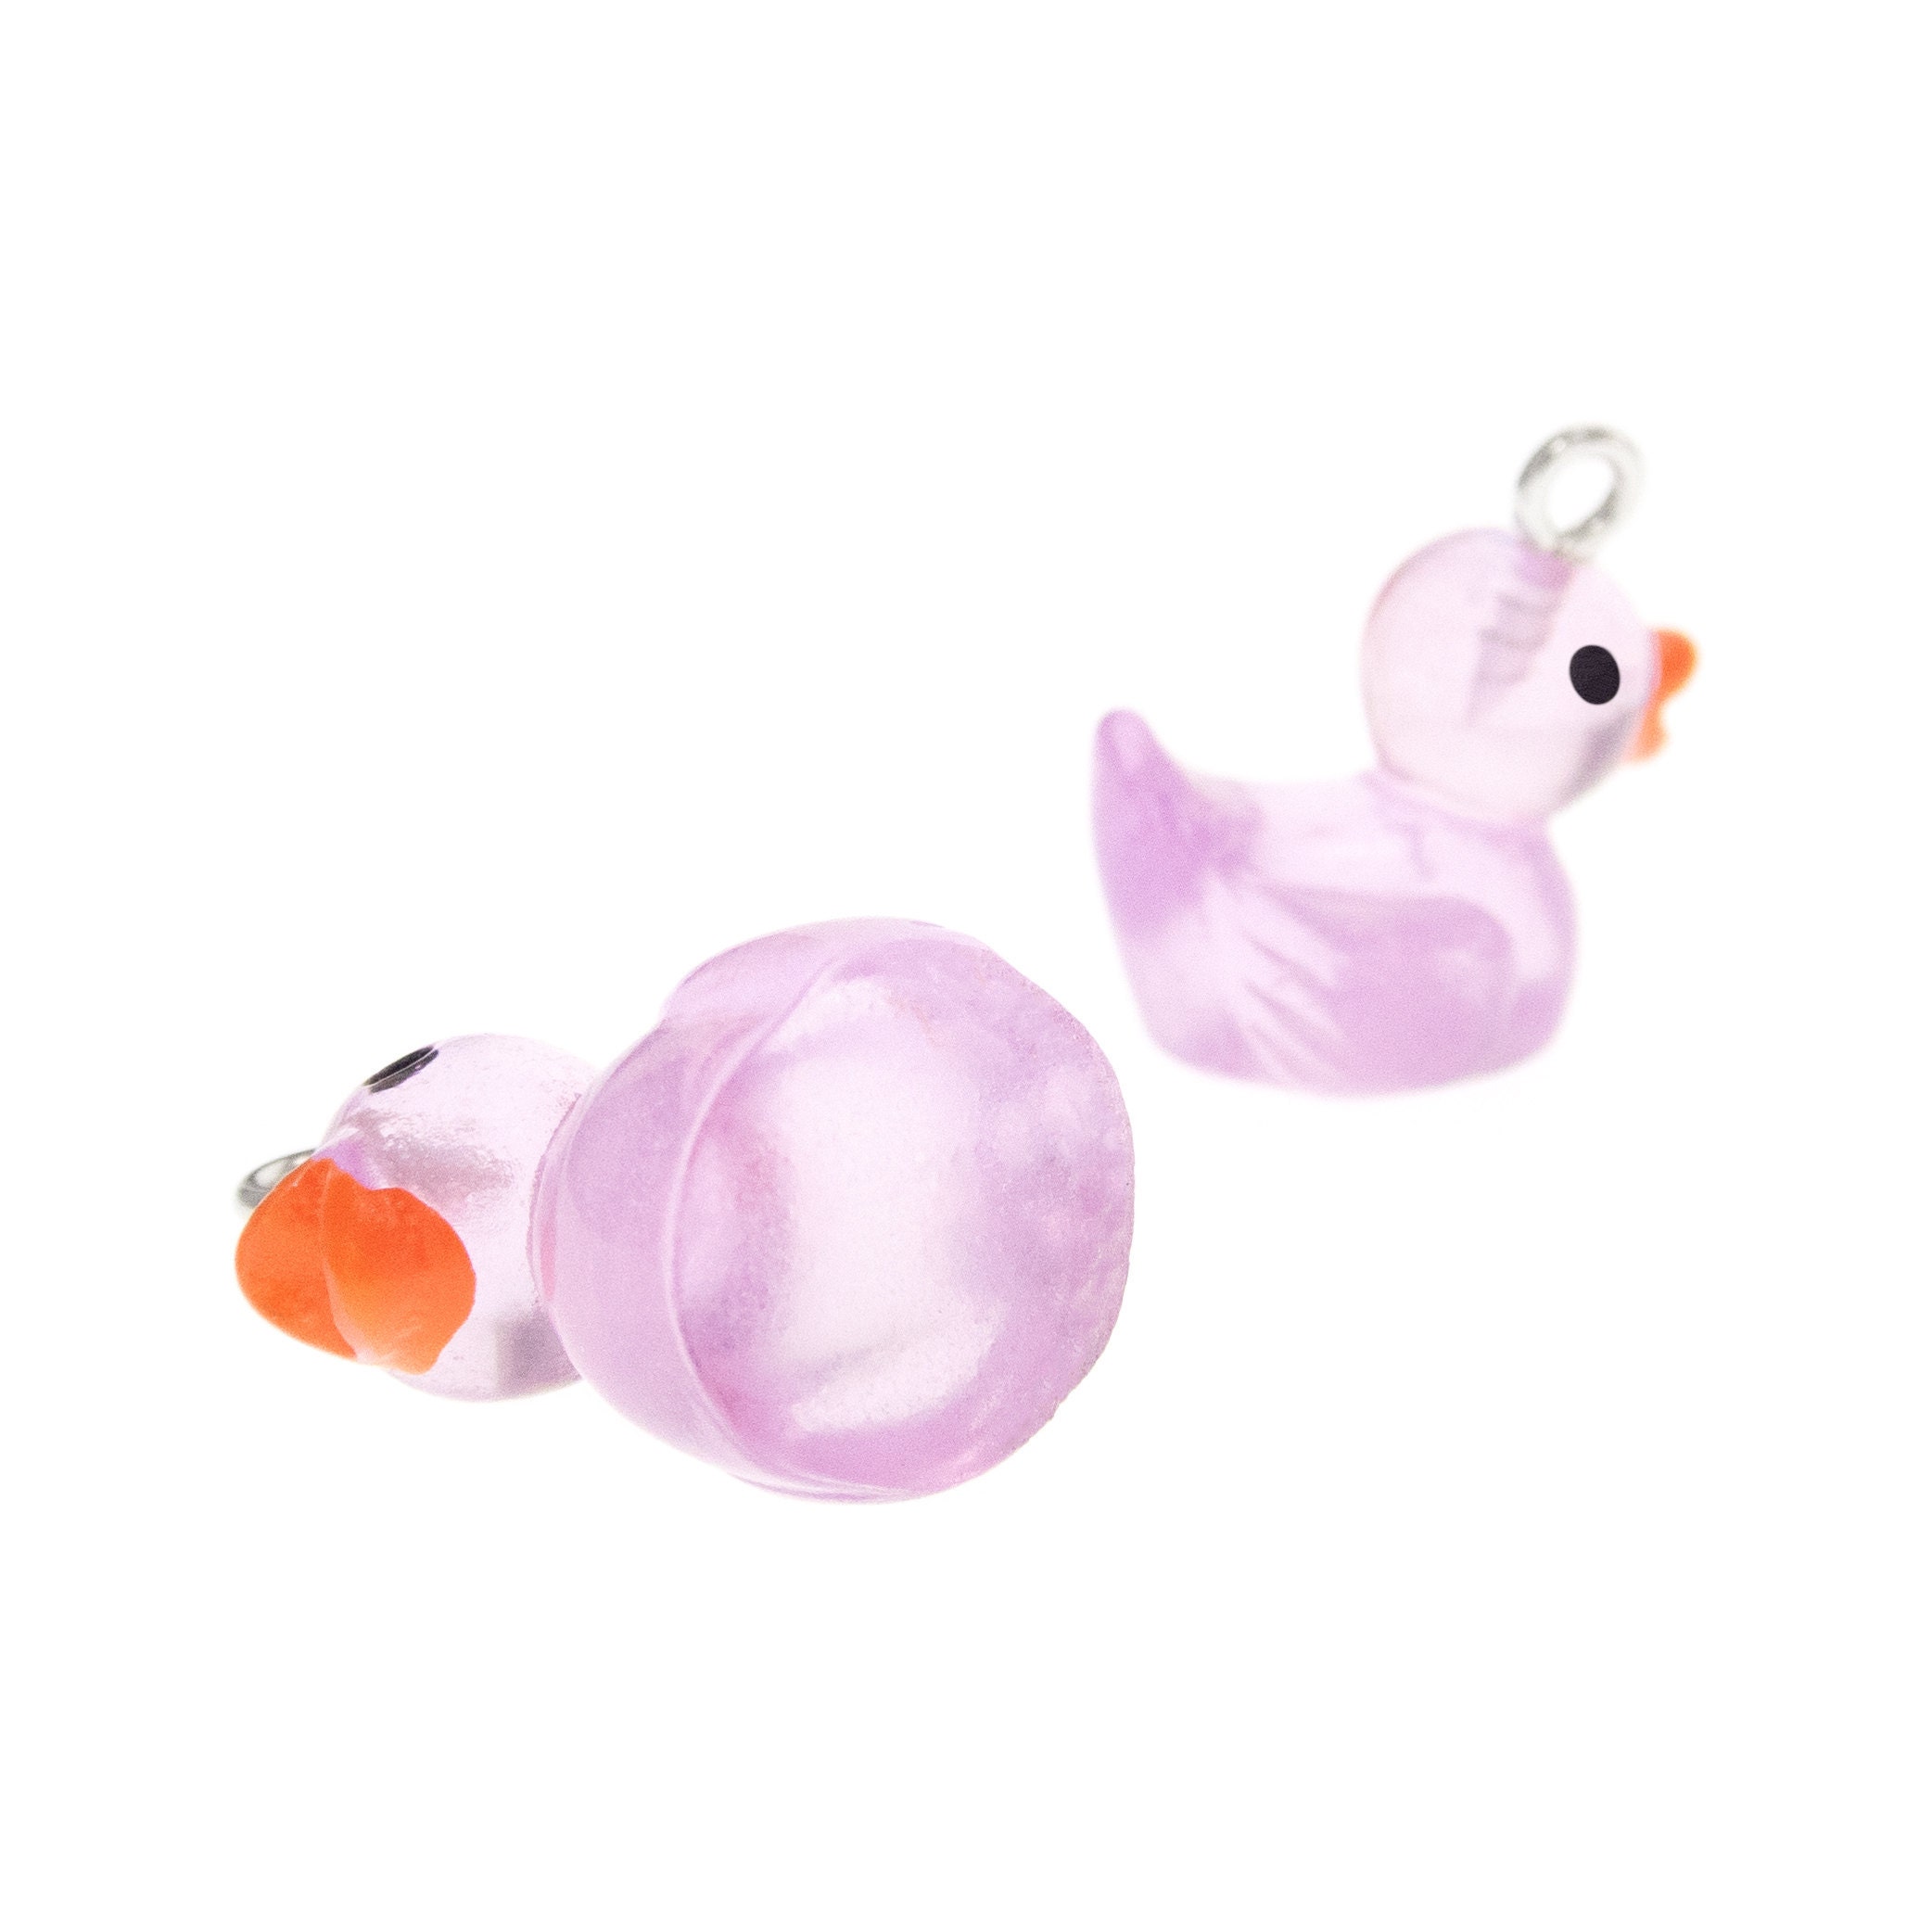 programming women earrings with rubber ducks